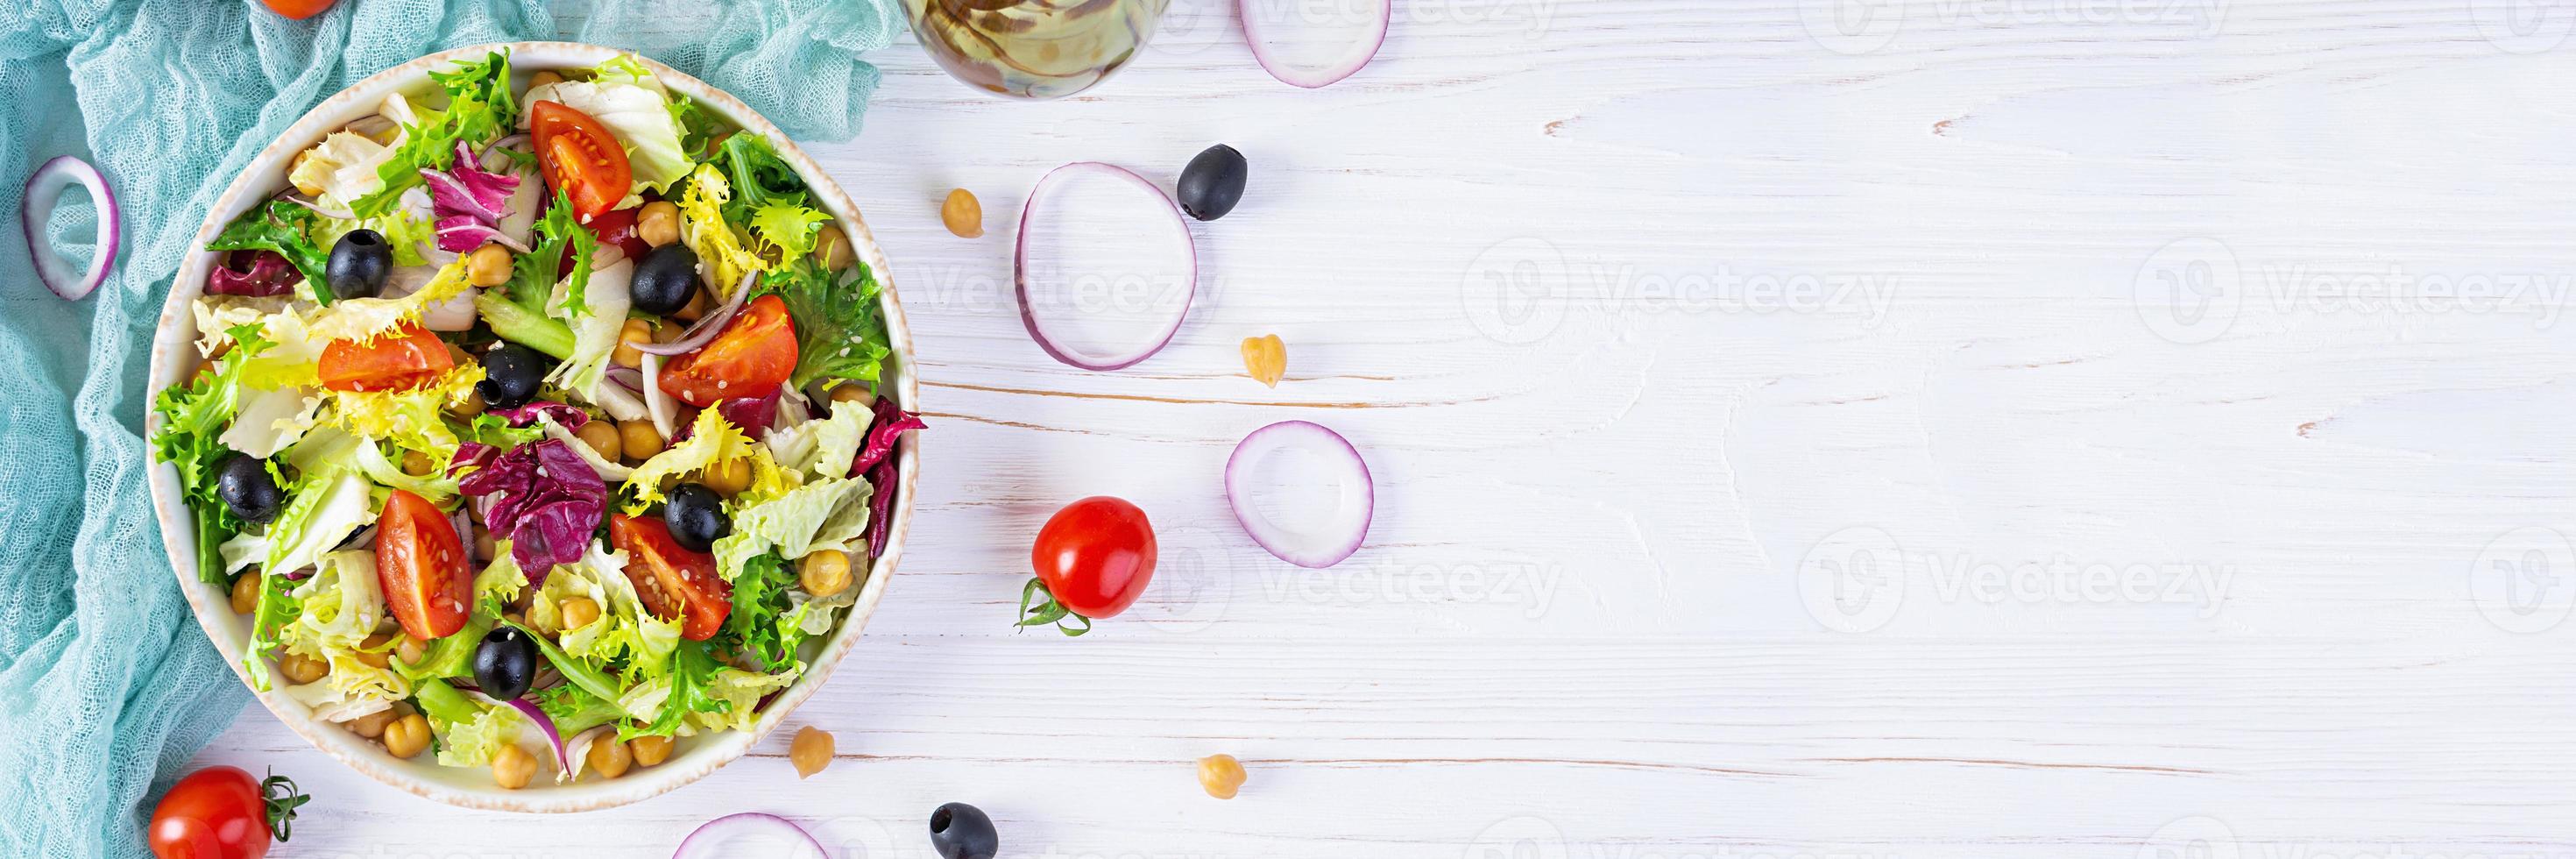 salada vegetariana com grão de bico, tomate, azeitonas e alface. comida de salada de dieta foto